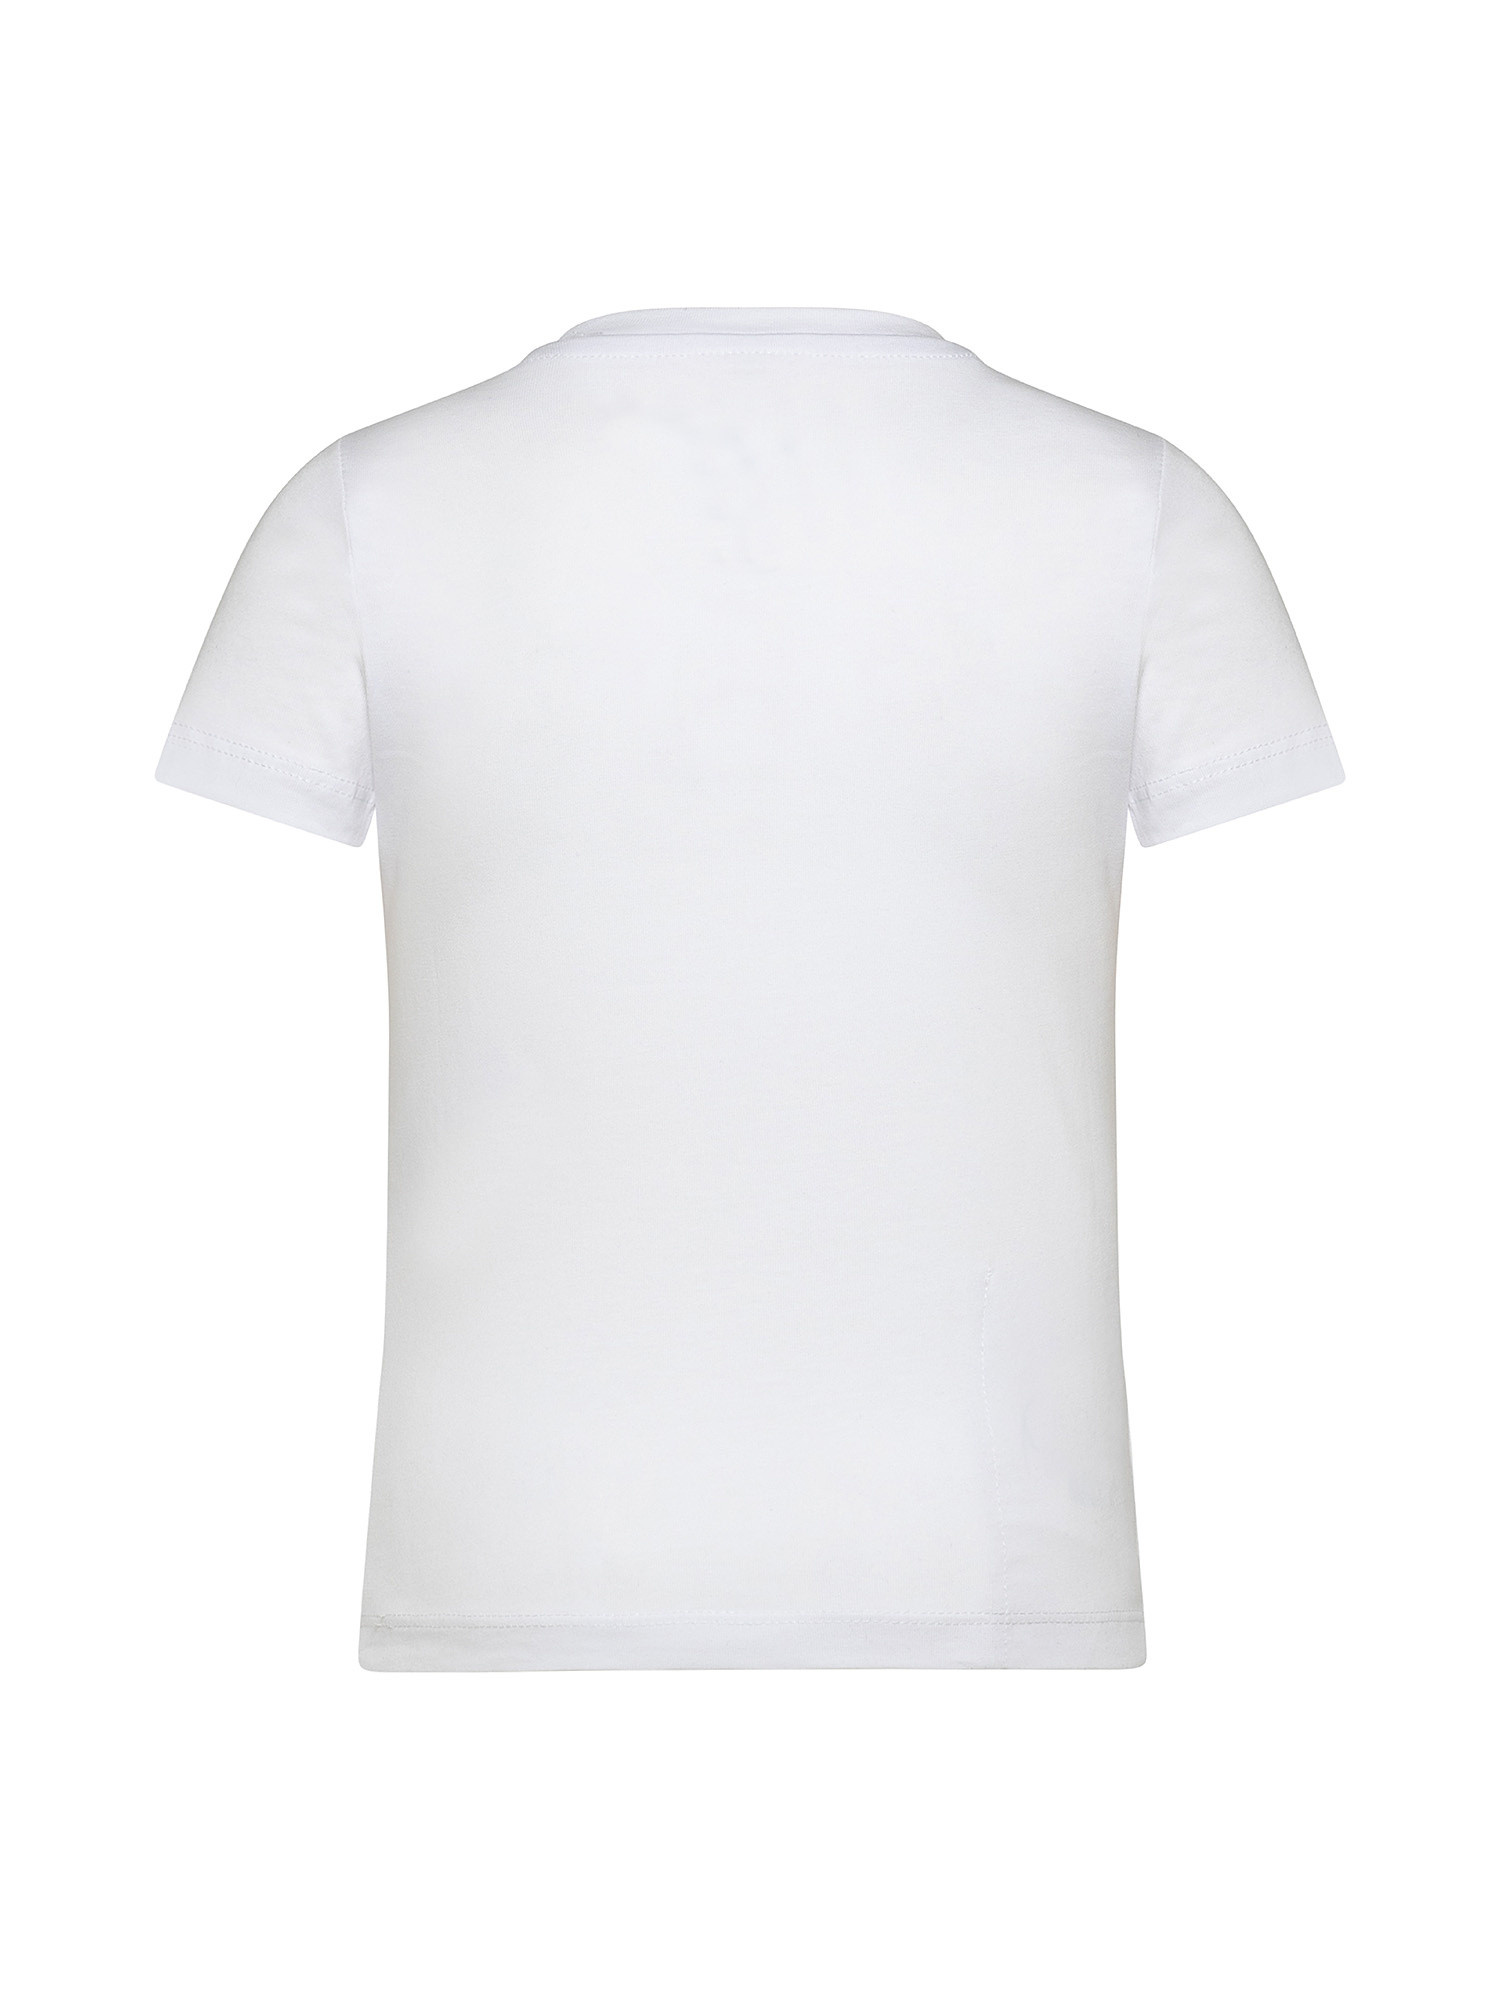 T-shirt bambino regular fit, Bianco, large image number 1